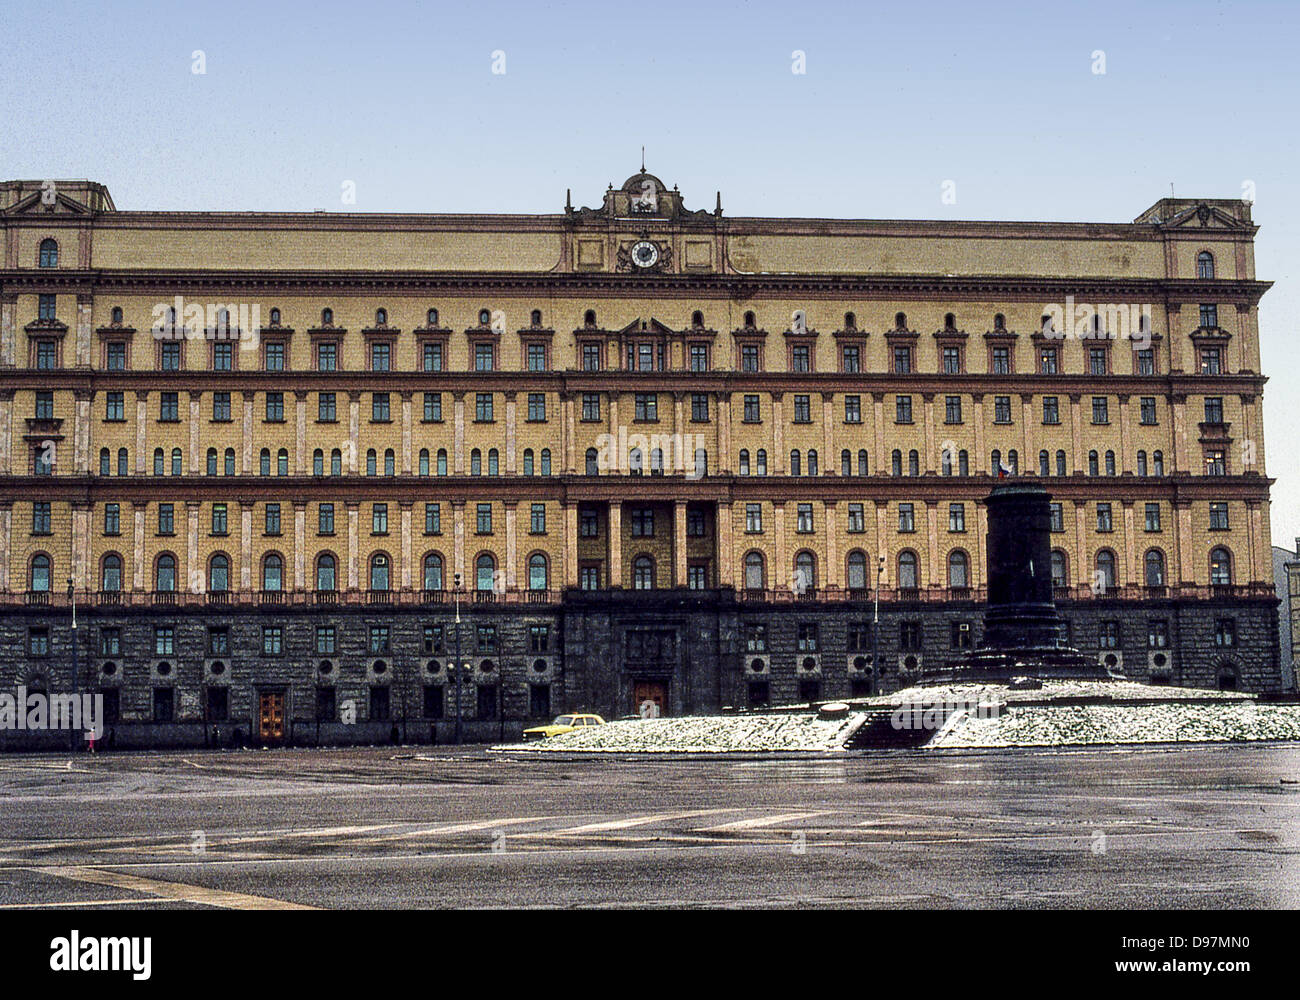 El pasado 10 de noviembre, 1991 - Moscú, RU - La sede de la KGB (Comité para la Seguridad del Estado), en la Plaza Lubyanka en Moscú, fotografiado en noviembre de 1991, tras la estatua de Felix Dzerzhinsky, primer jefe de la policía secreta soviética, un hito de Moscú durante los tiempos Soviéticos, había sido retirado de su base tras el fracaso del golpe de estado contra Gorbachov. Después de la disolución de la URSS y de la KGB en 1991, el edificio se convirtió en la sede del Servicio Federal de Seguridad (FSB), sucesor de la KGB. (Crédito de la Imagen: © Arnold Drapkin/ZUMAPRESS.com) Foto de stock